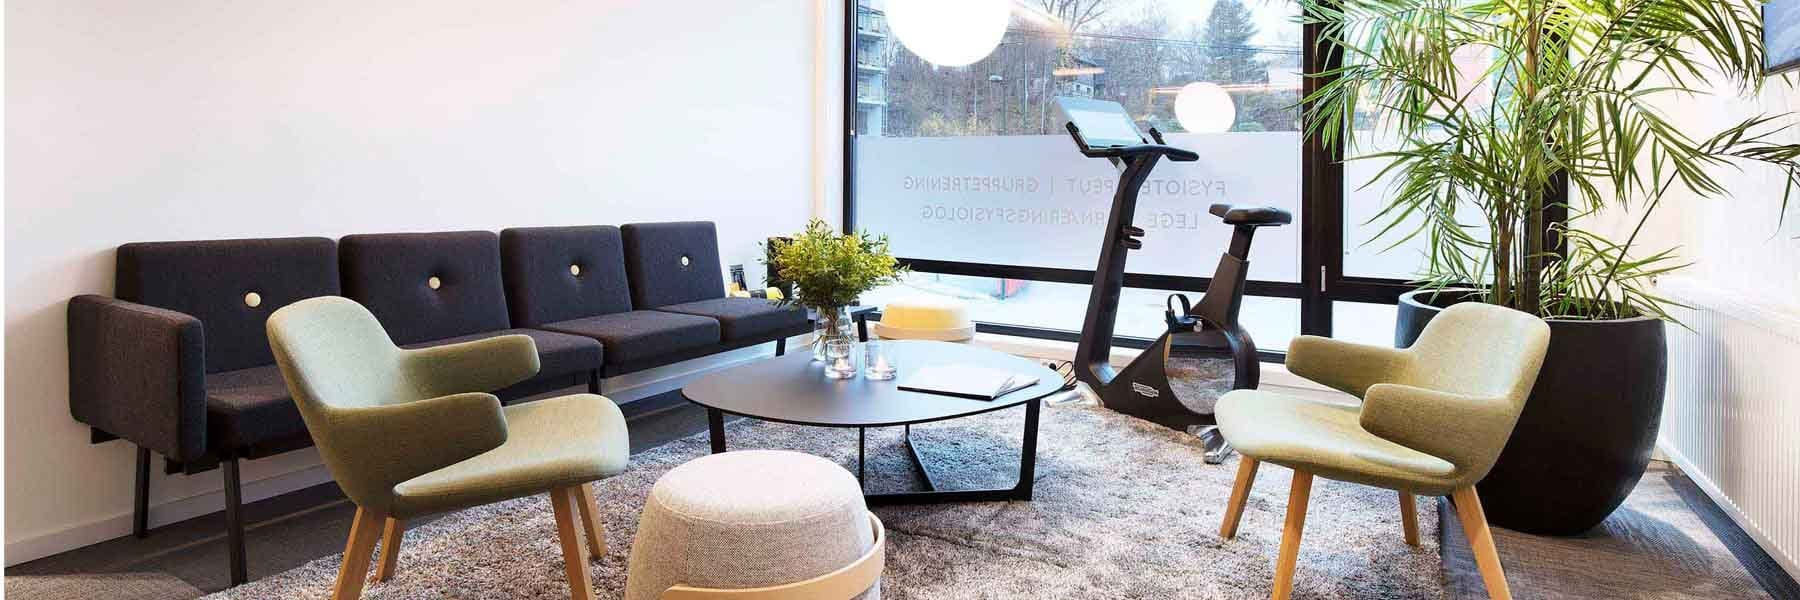 Paradis Helse – eksklusivt showroom for Personal Line i Norge